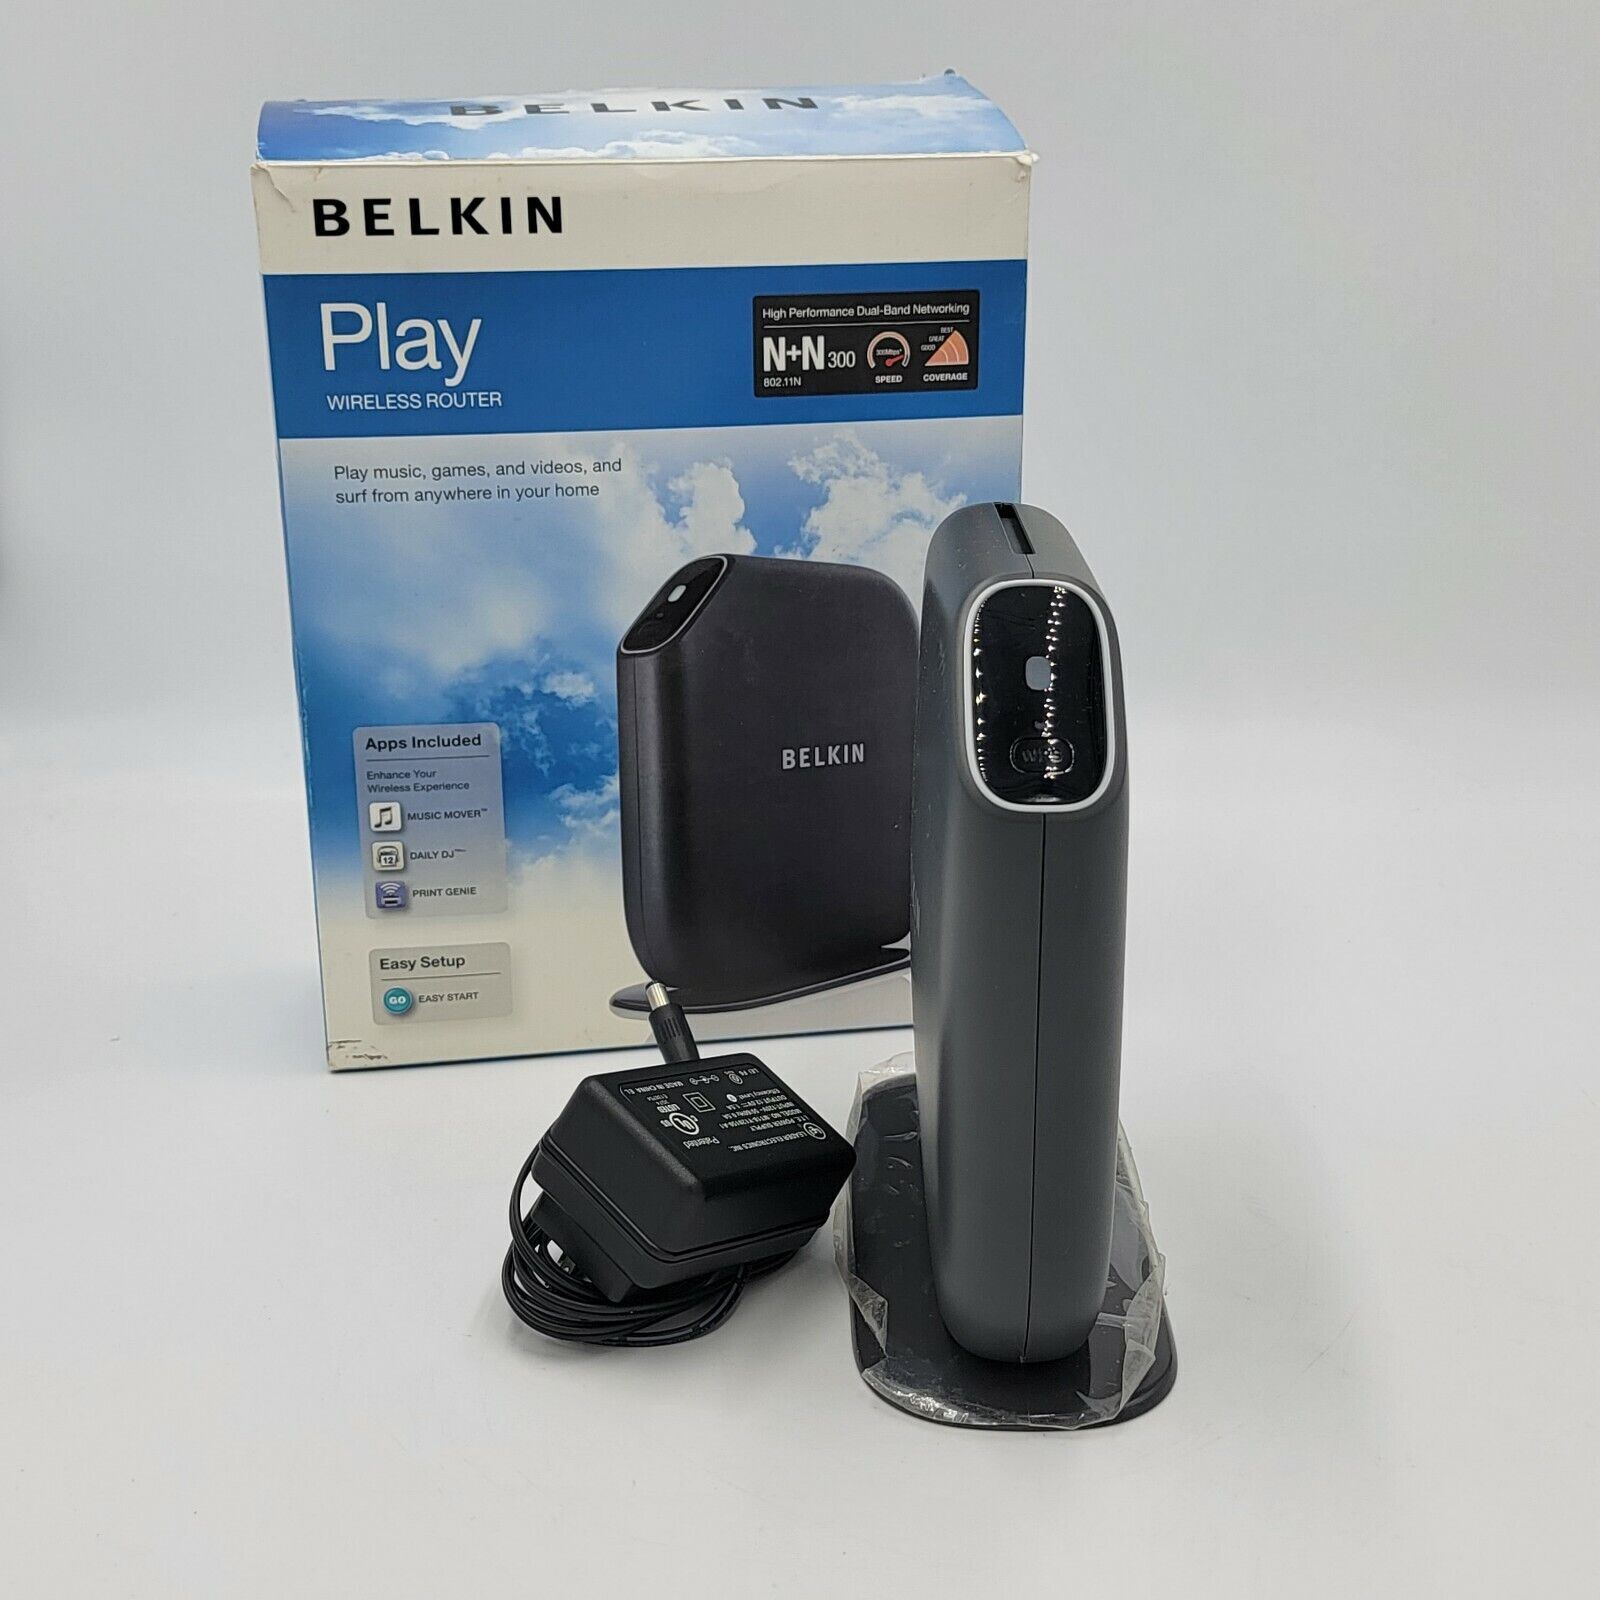 Belkin Play Wireless Router - F7D4302 